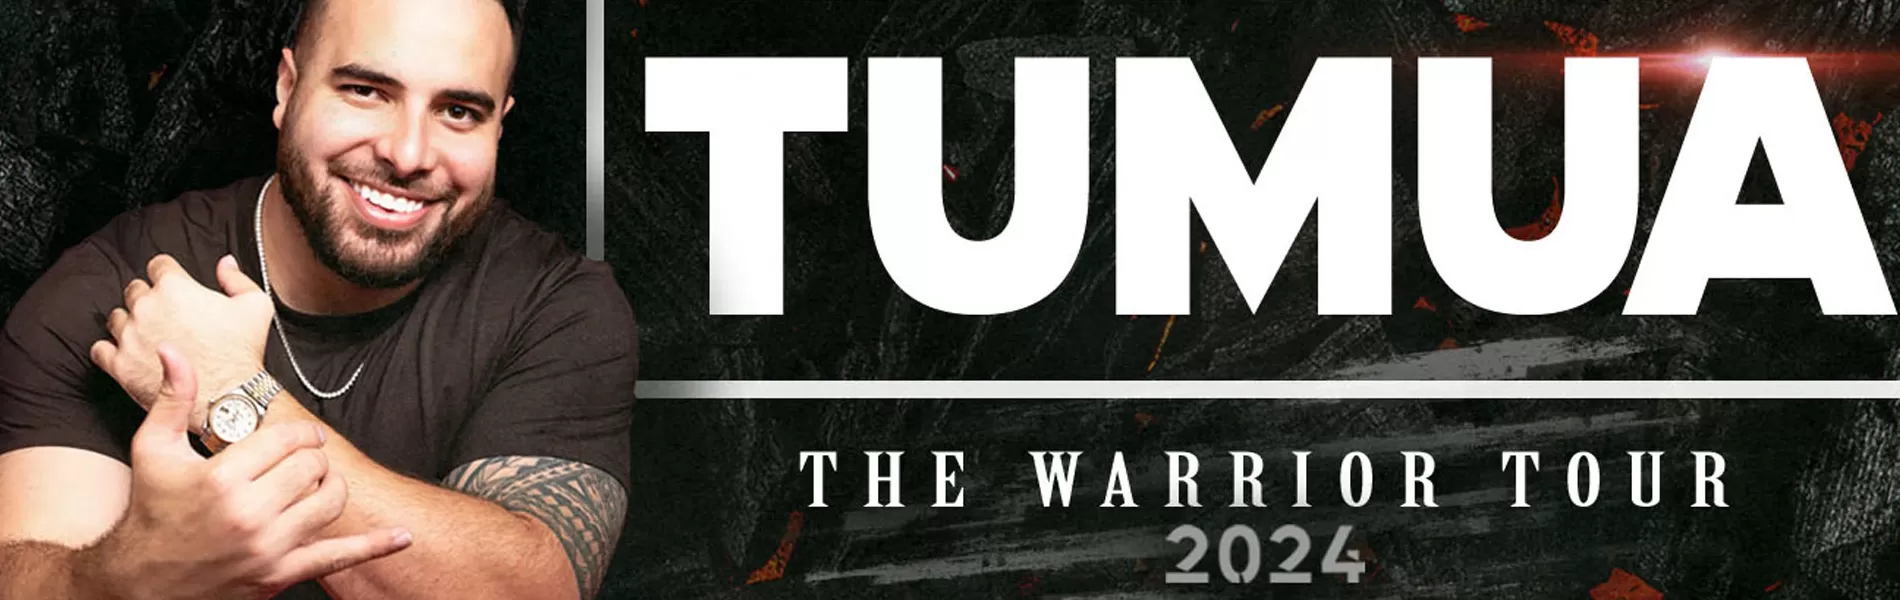 TUMUA: THE WARRIOR TOUR